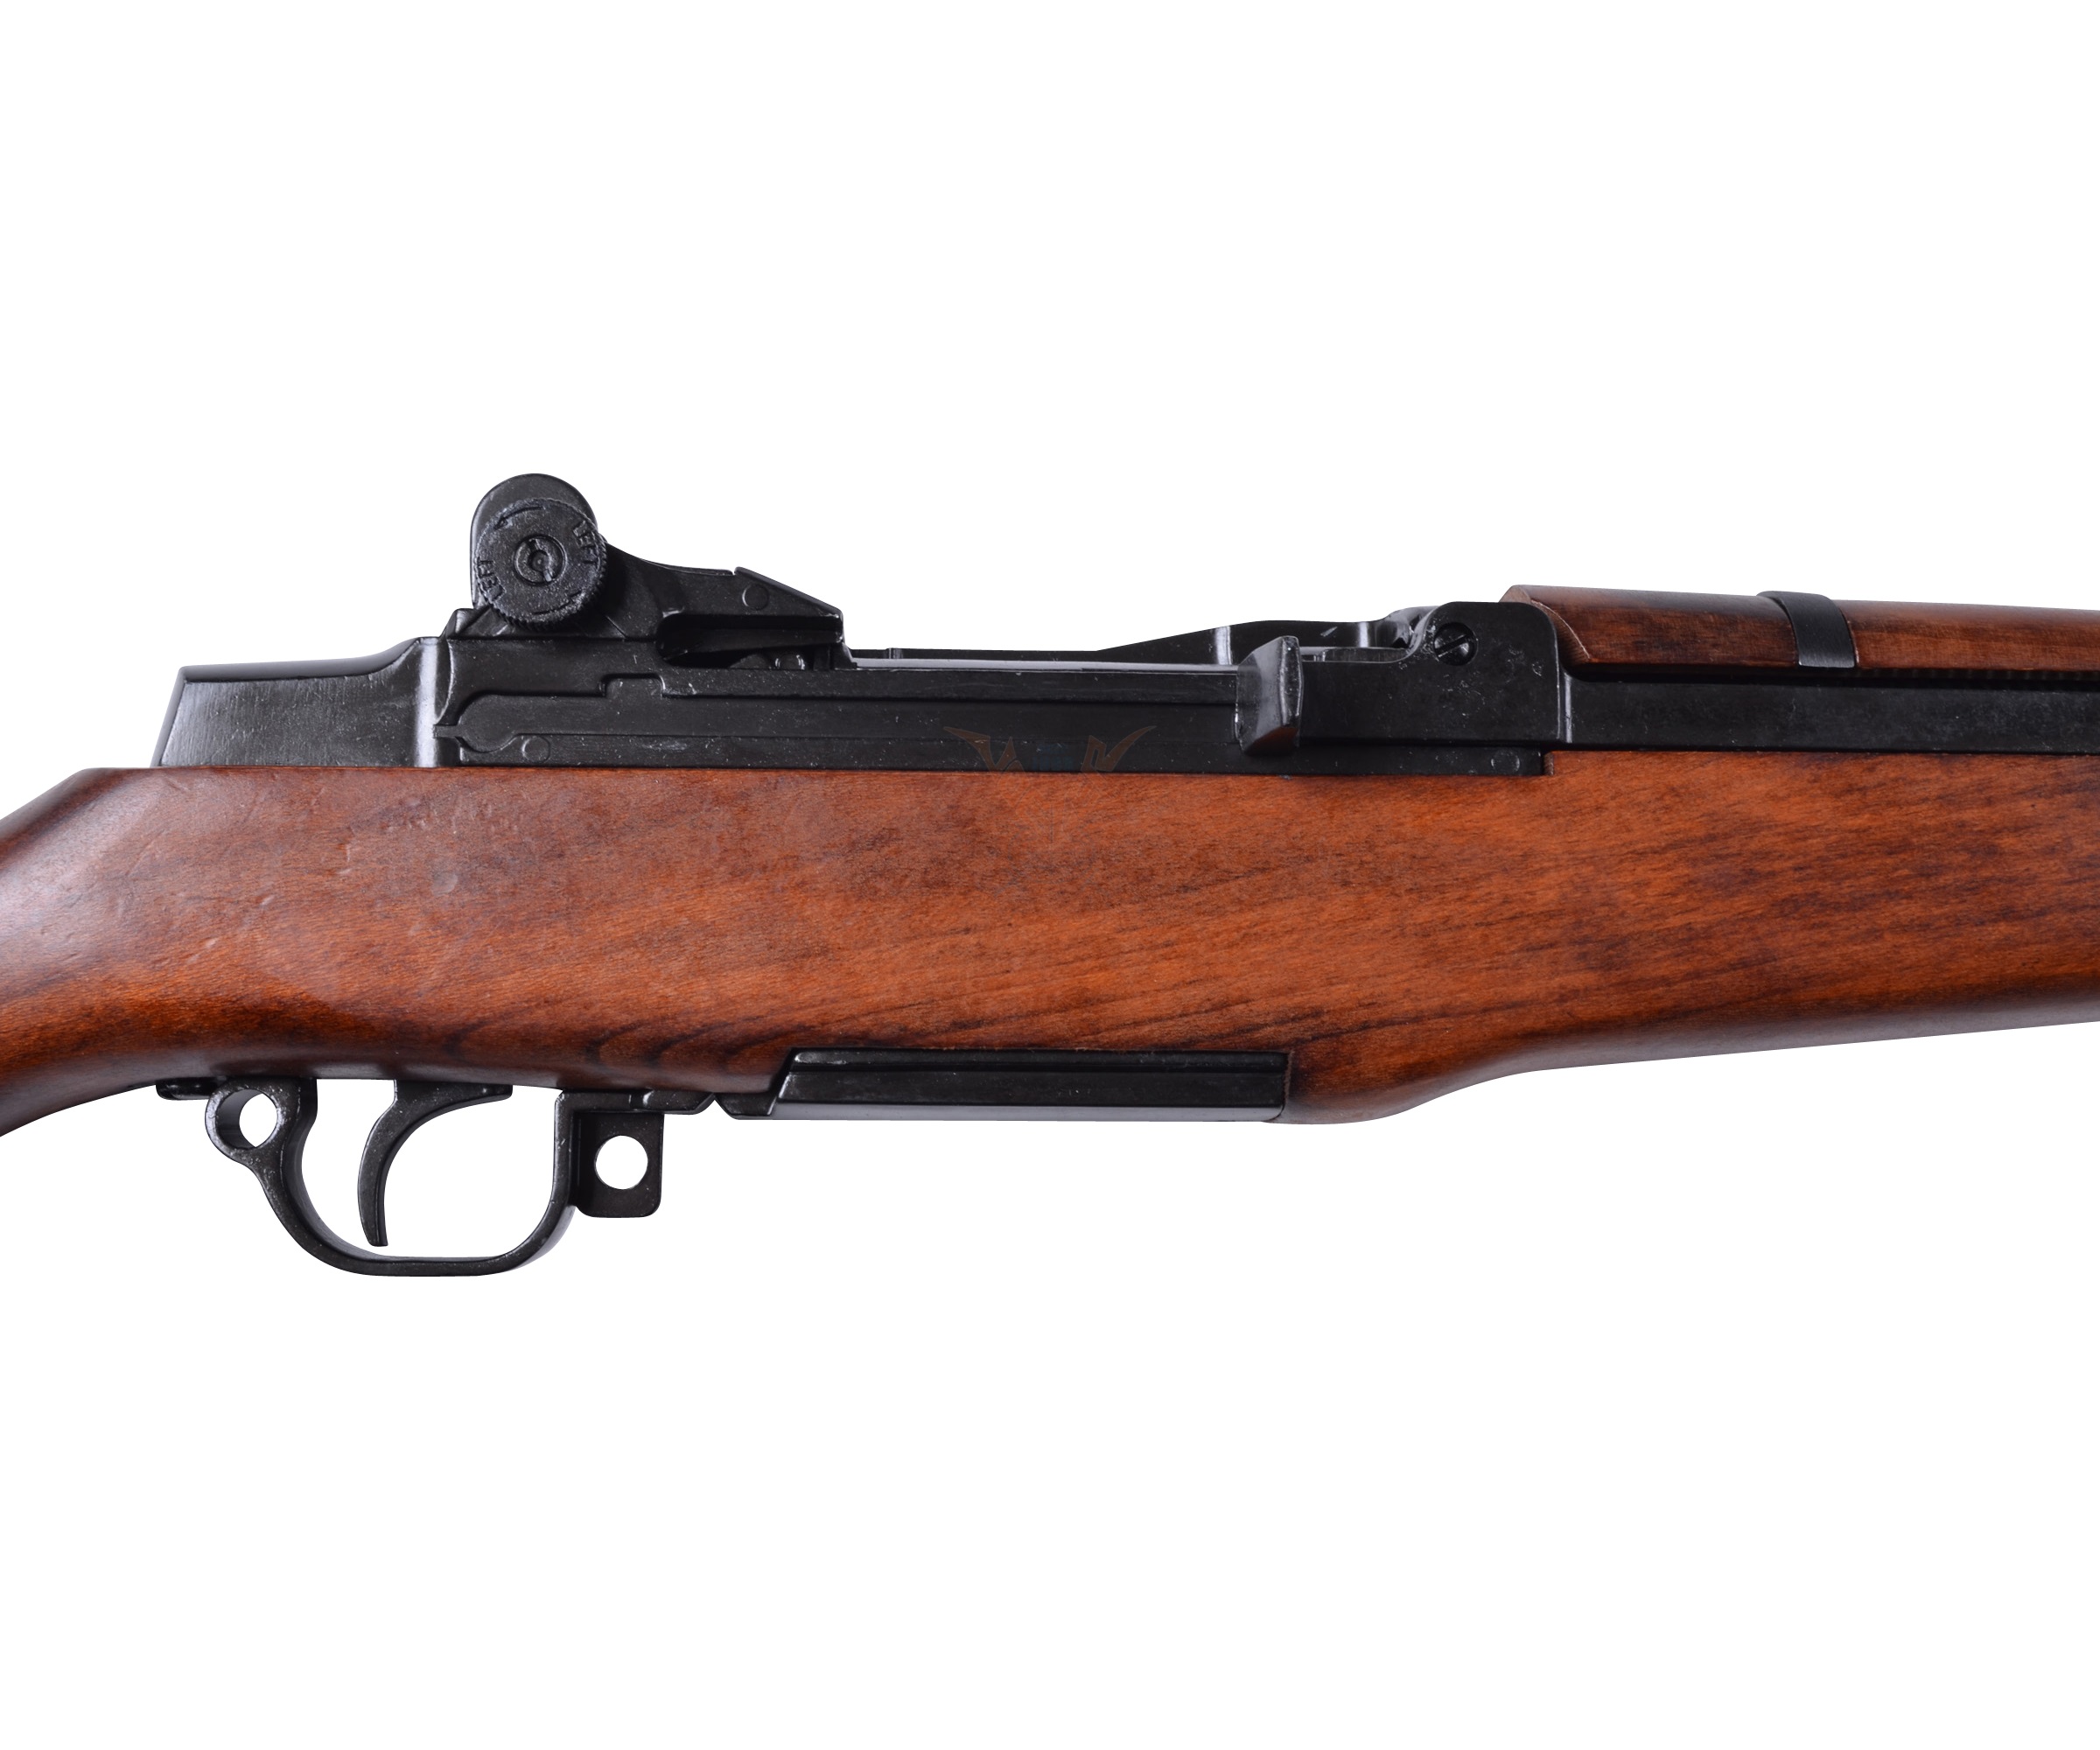 Макет винтовка самозарядная Гаранд M-1 (США, 1932 г.) DE-1105.